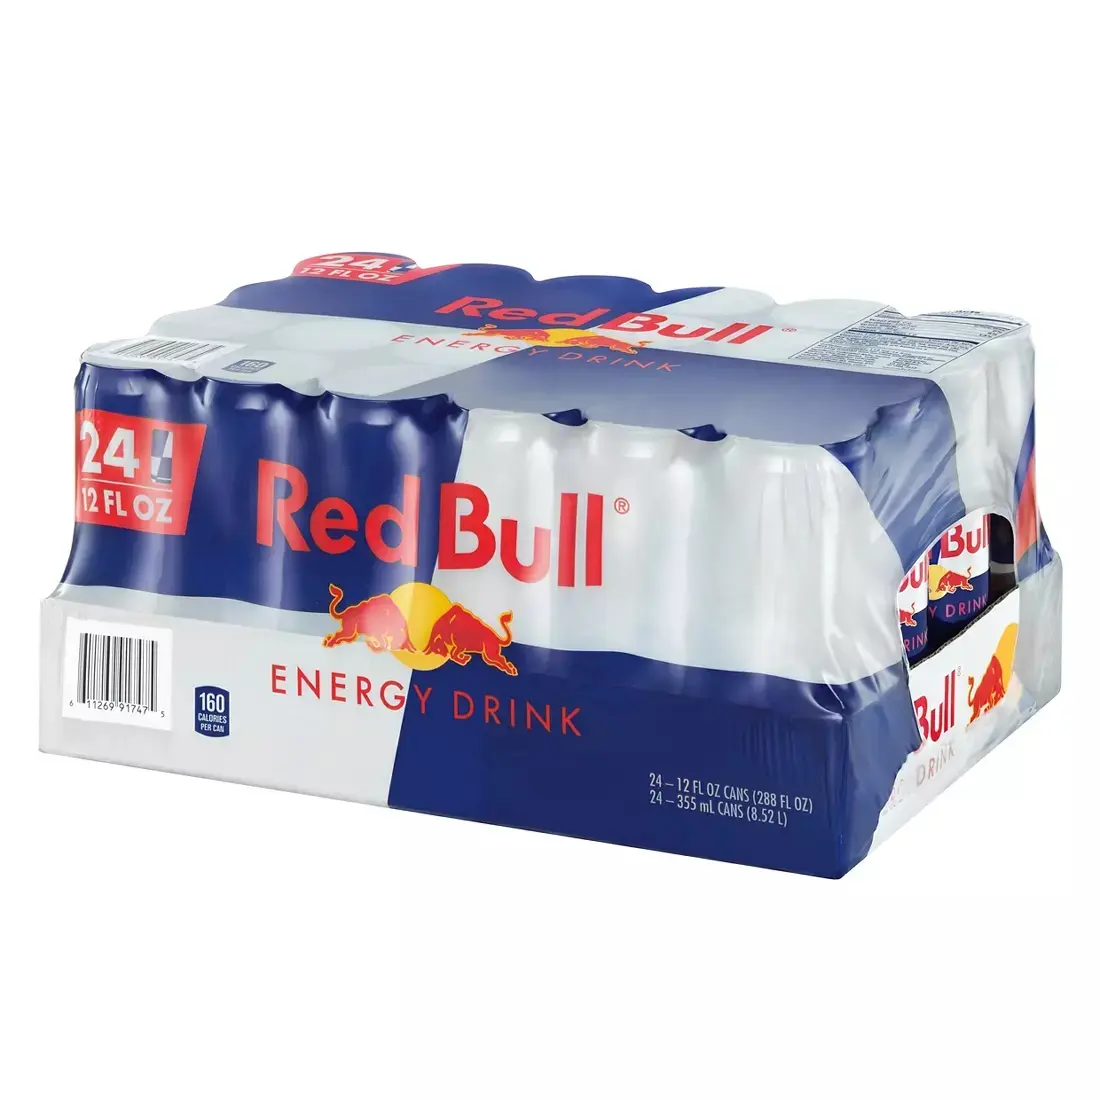 Toplu satış Red Bull 250ml 355ml karton toptan fiyat Redbull enerji içeceği ihracat ve teslim hazır